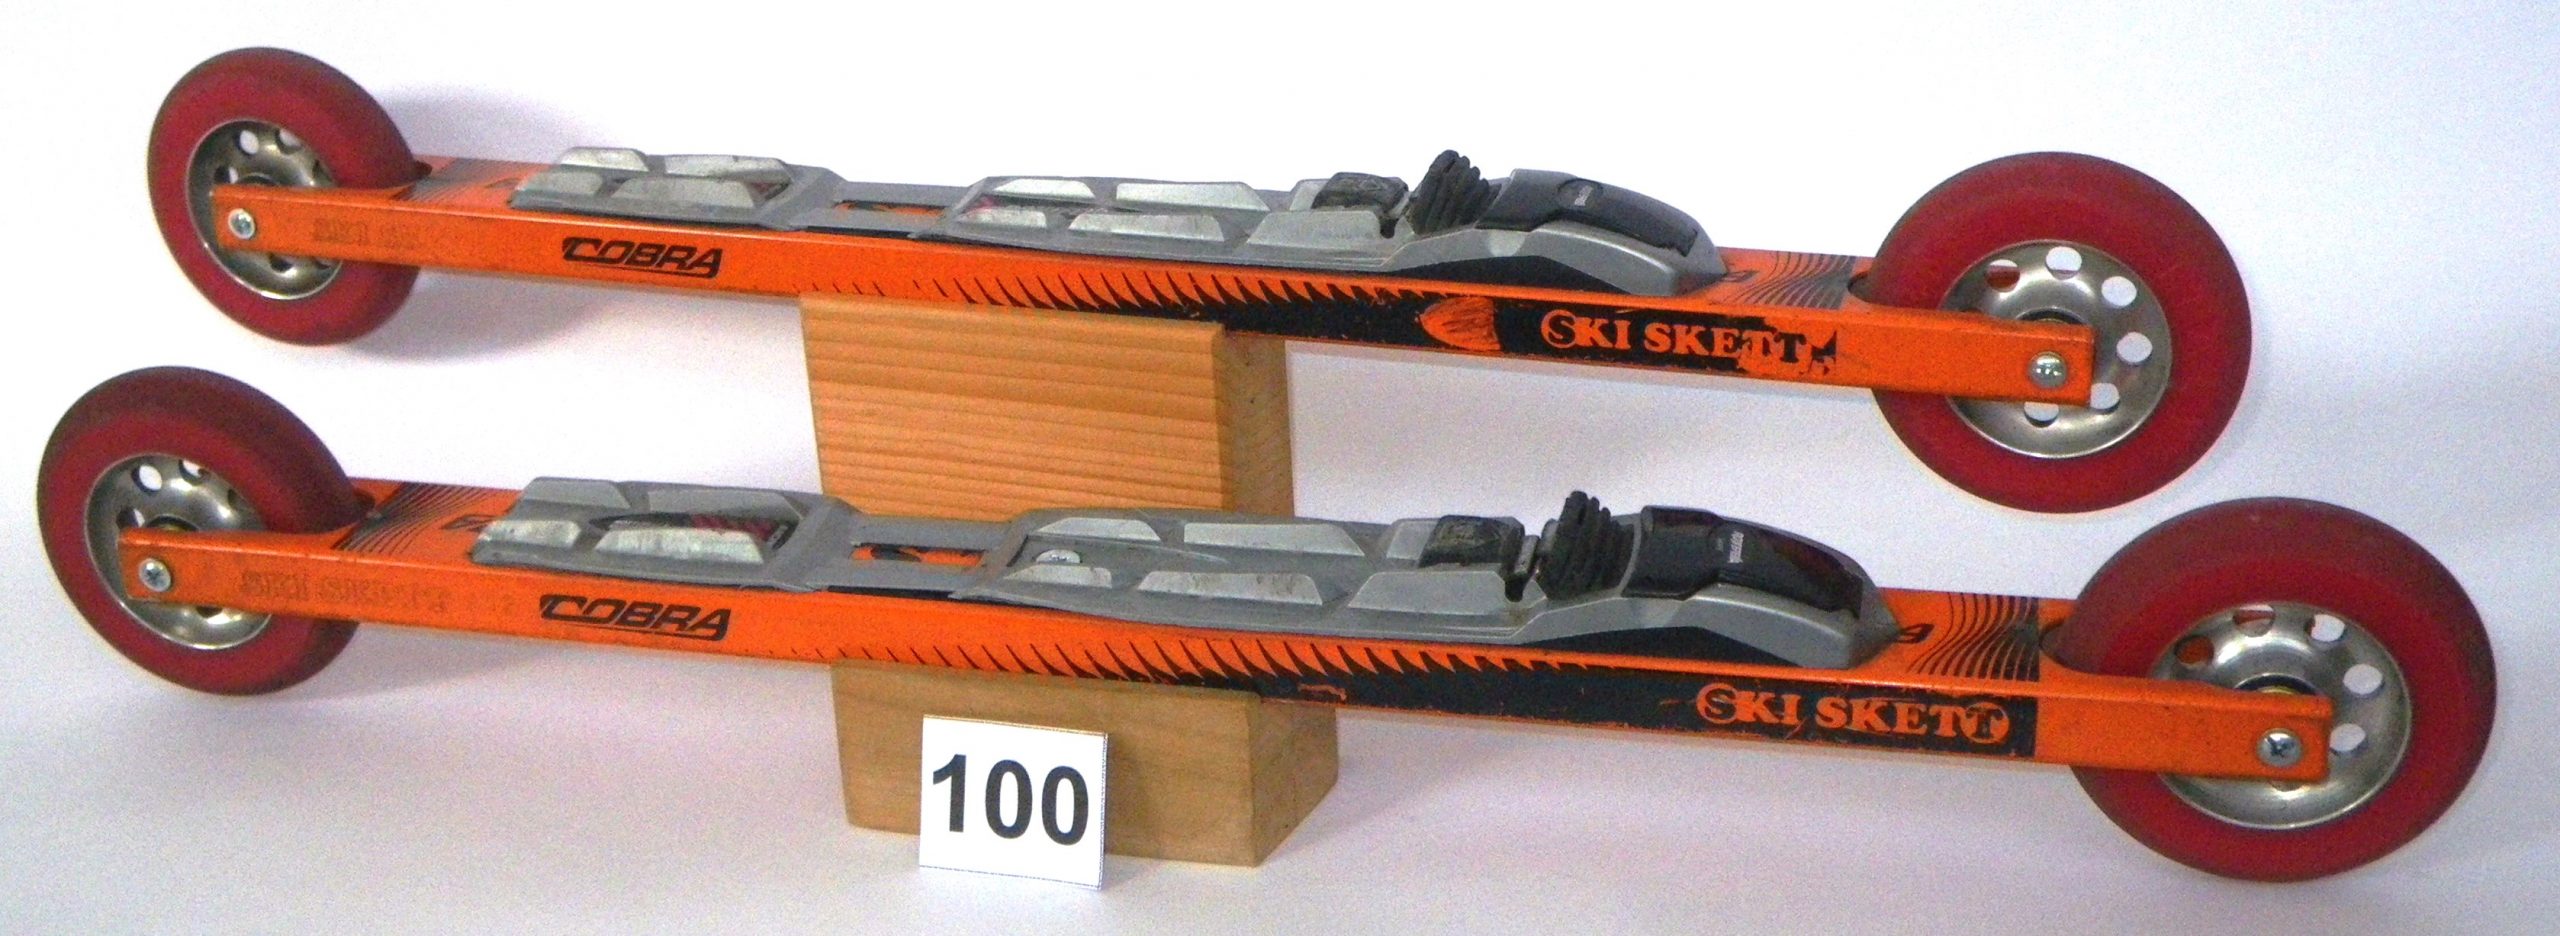 Roller Ski e Skiroll Skiskett prodotto Cobra 100